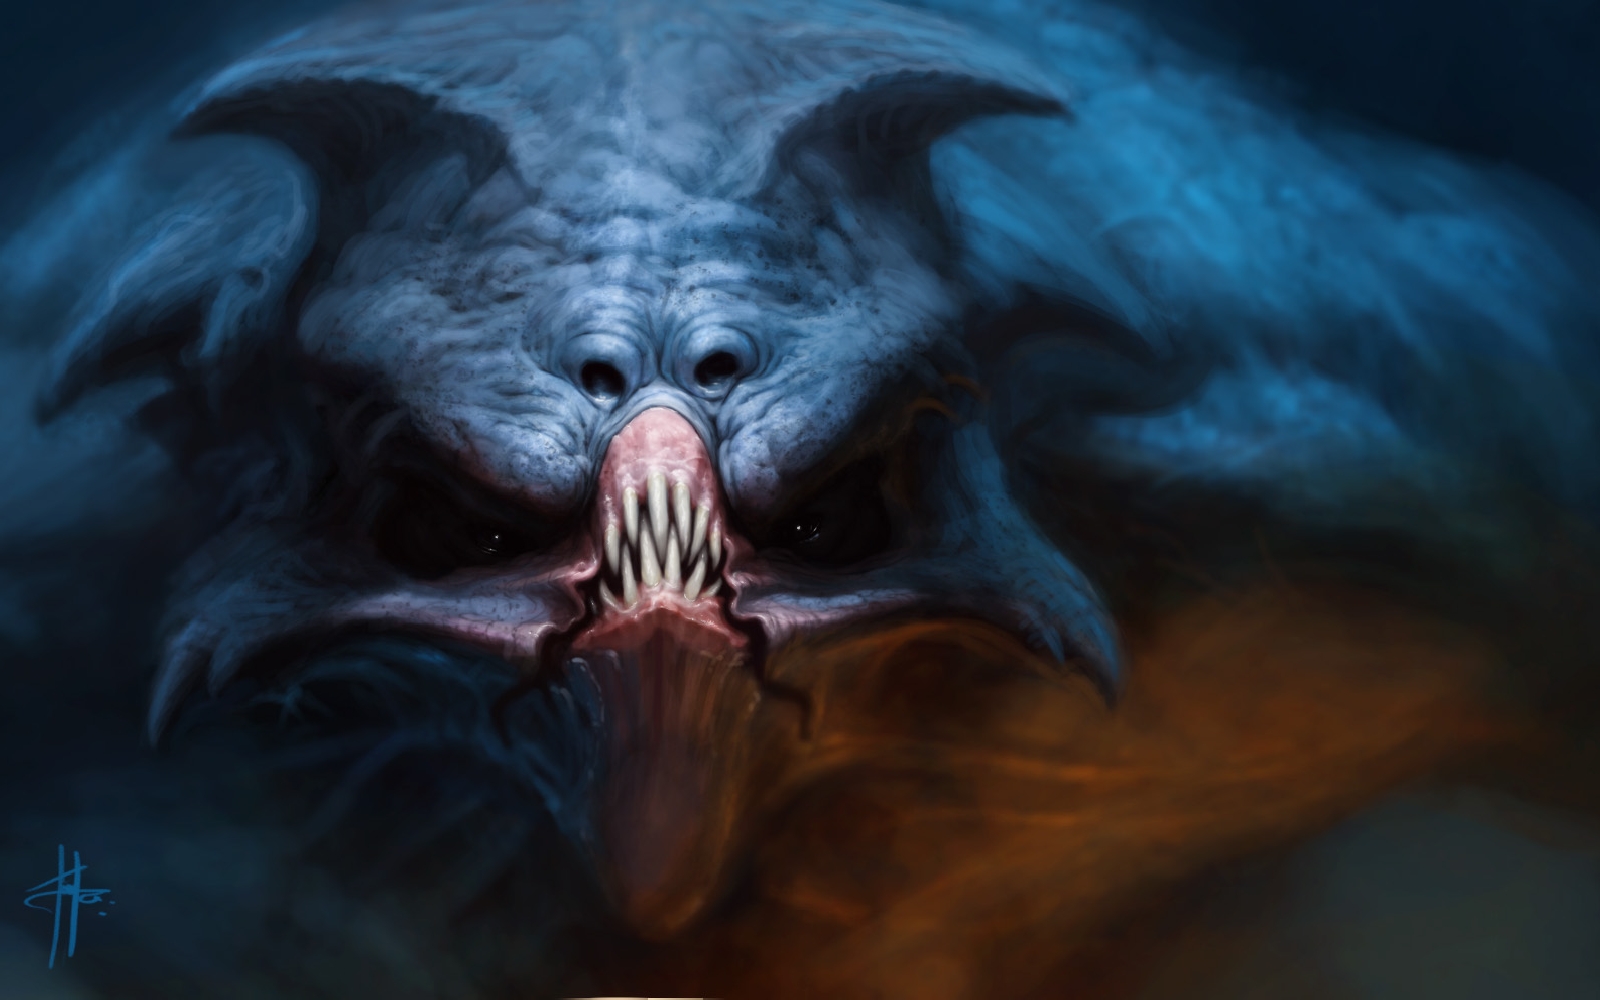 Free download wallpaper Dark, Creature on your PC desktop